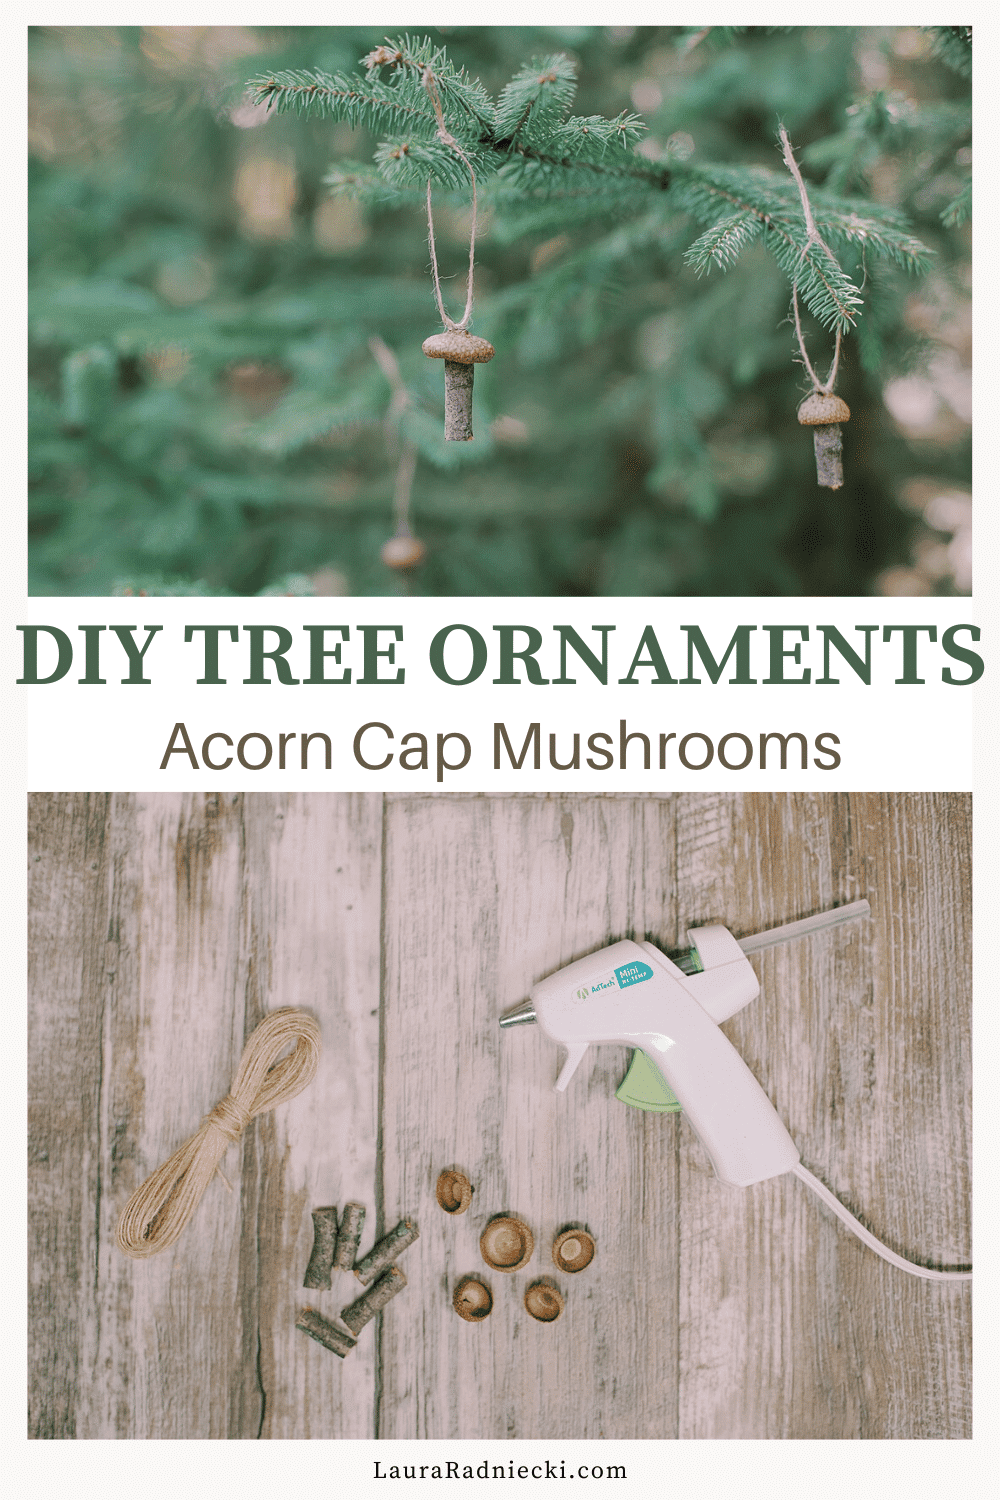 How to Make Acorn Cap Mushroom Ornaments